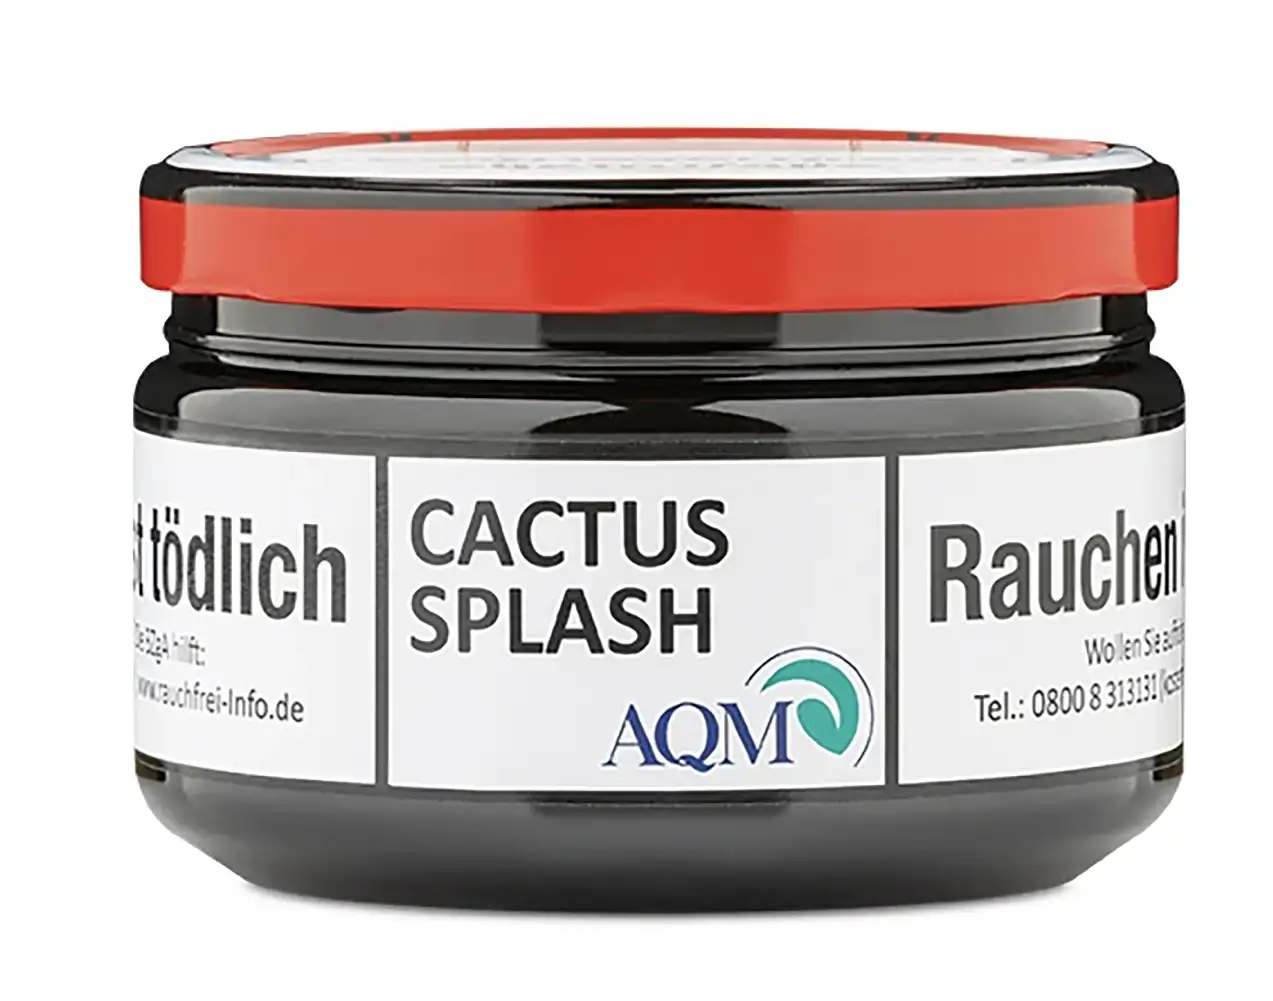 Aqua Mentha Dry Base Tabak Cactus Splash 100g